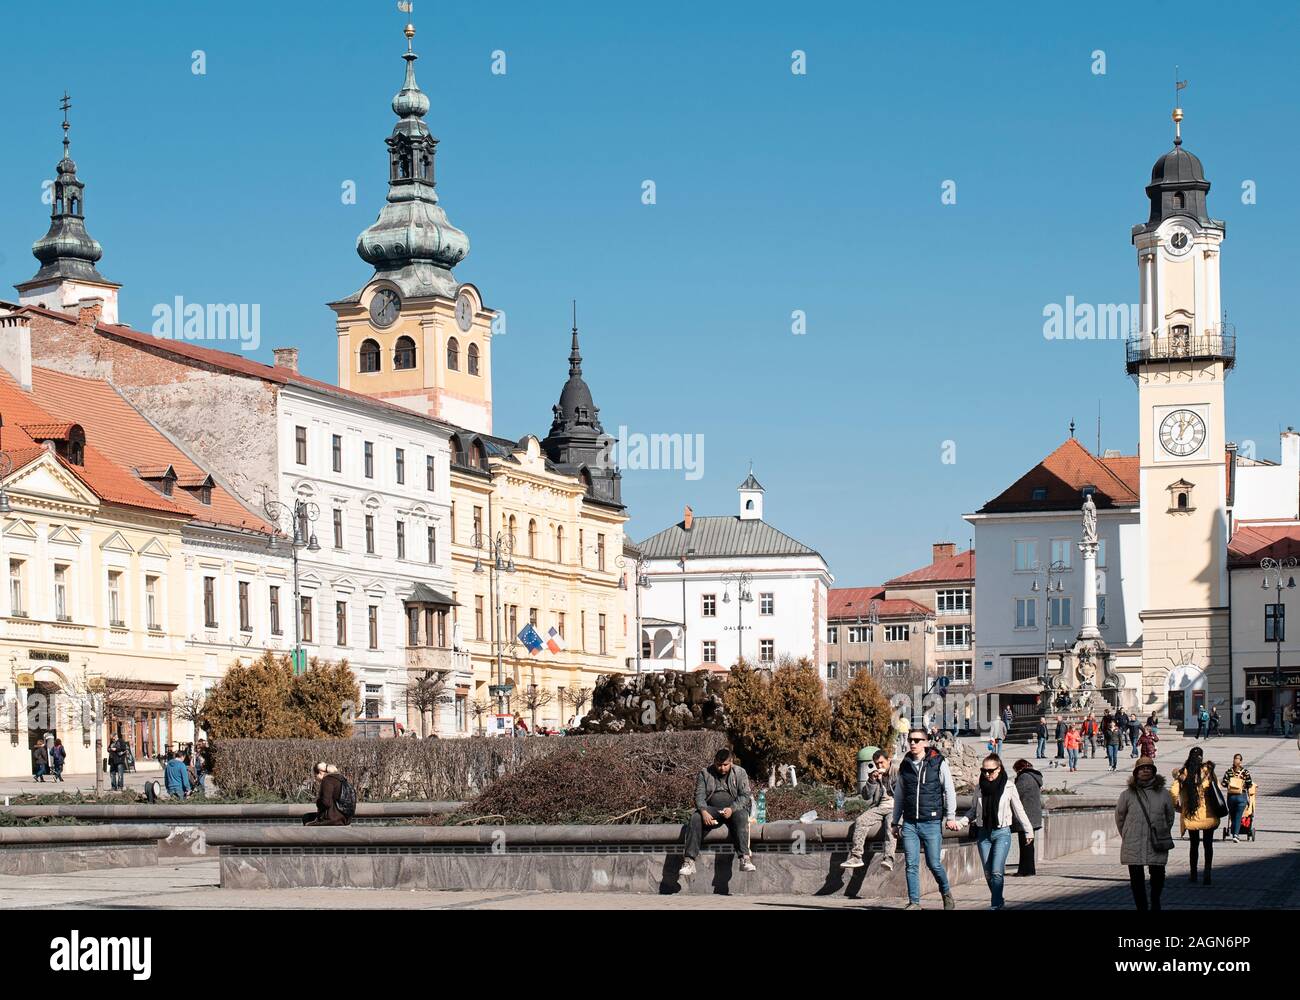 Banska Bystrica, Slovacchia - 1 Marzo 2019: piazza principale della Rivolta Nazionale Slovacca di Banska Bystrica, Slovacchia centrale, Europa. Foto Stock